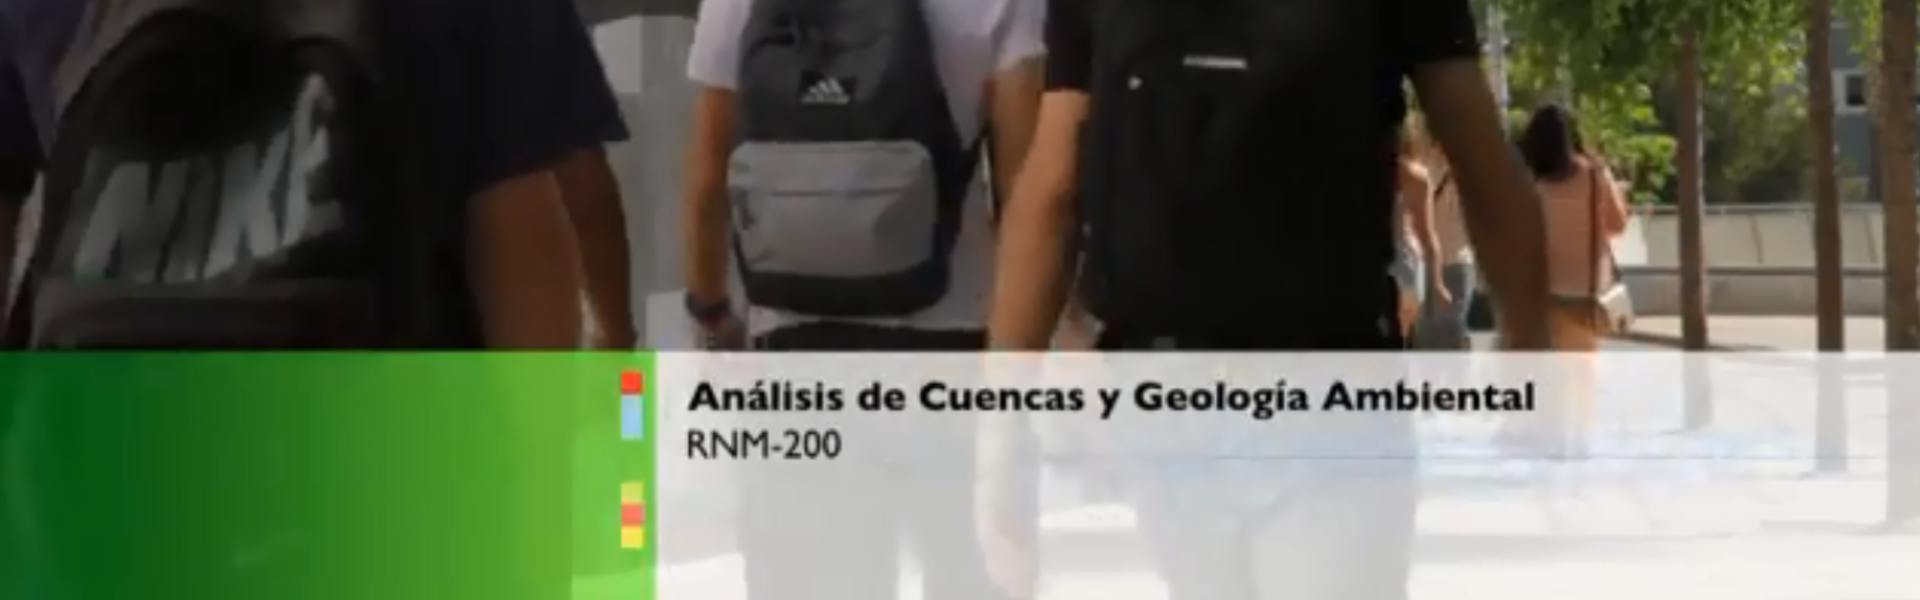 Análisis de Cuencas y Geología Ambiental 